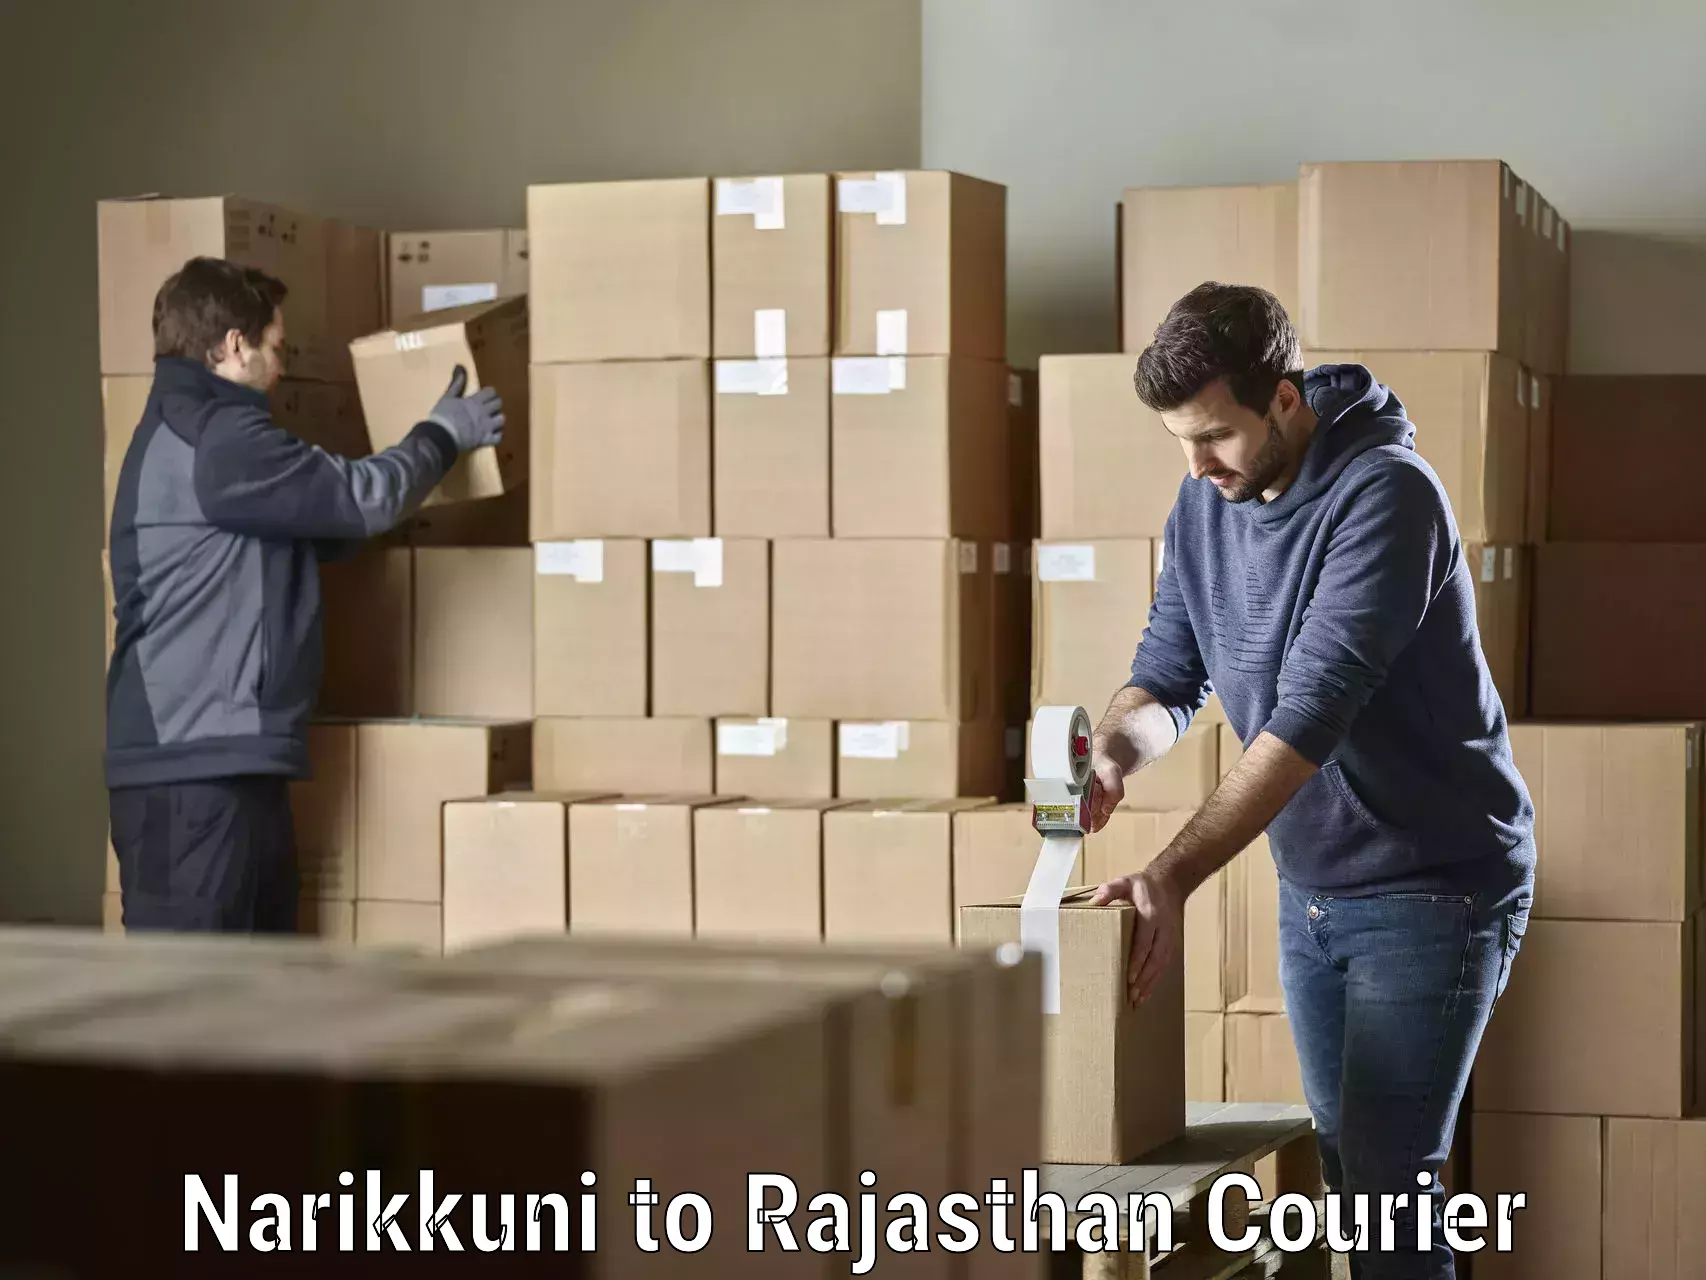 Premium delivery services Narikkuni to Suratgarh